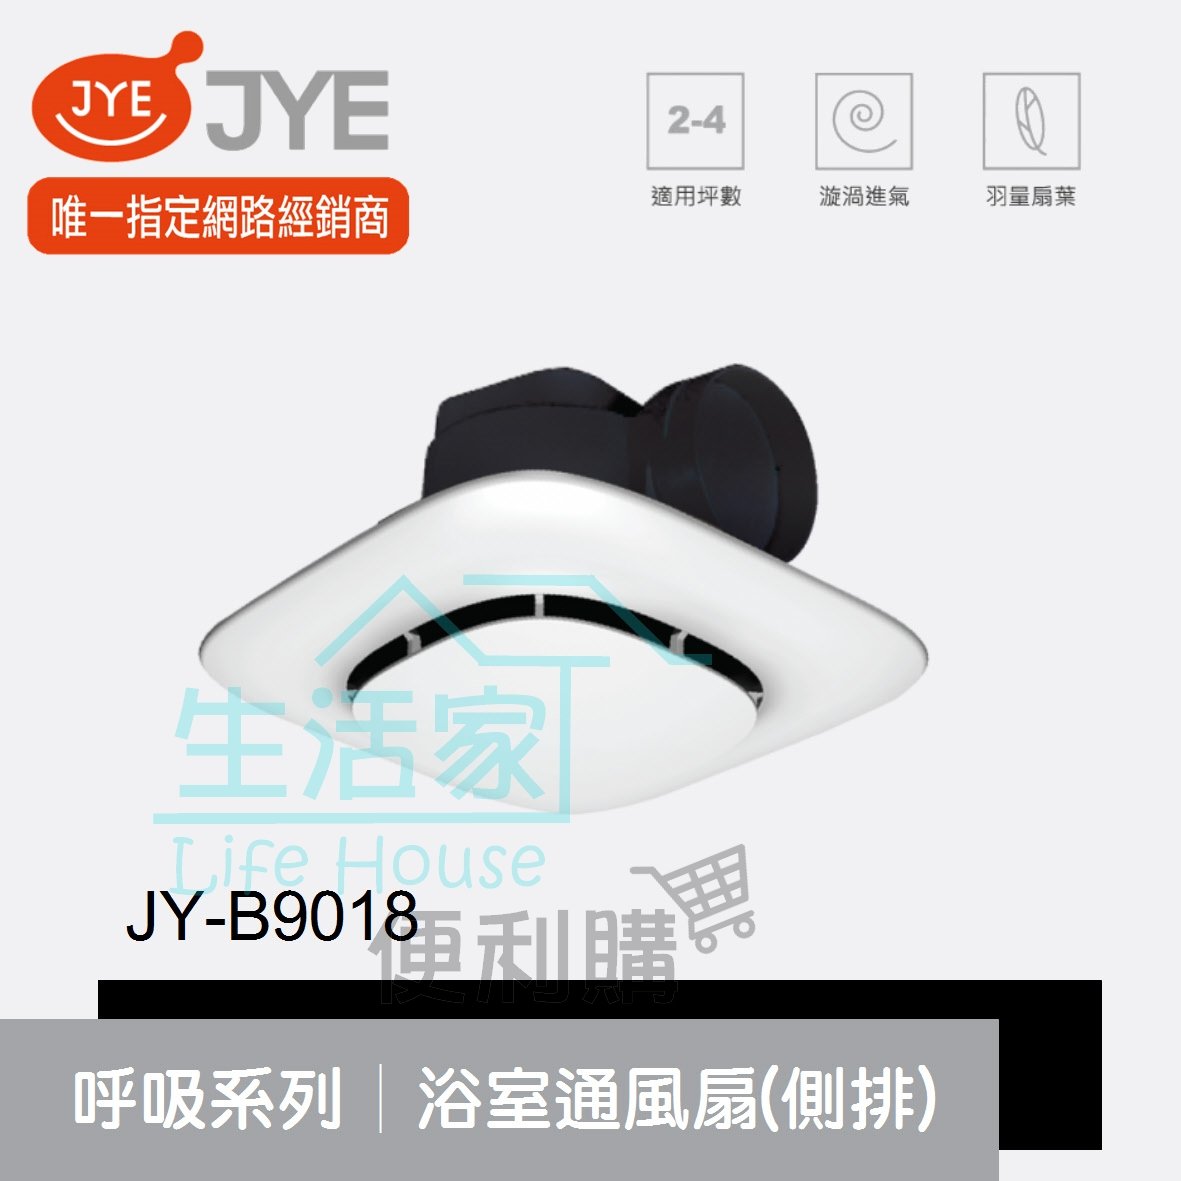 【生活家便利購】《附發票》中一電工 JY-B9018 呼吸系列 浴室通風扇 (側排) 抽風扇 排風扇 110V